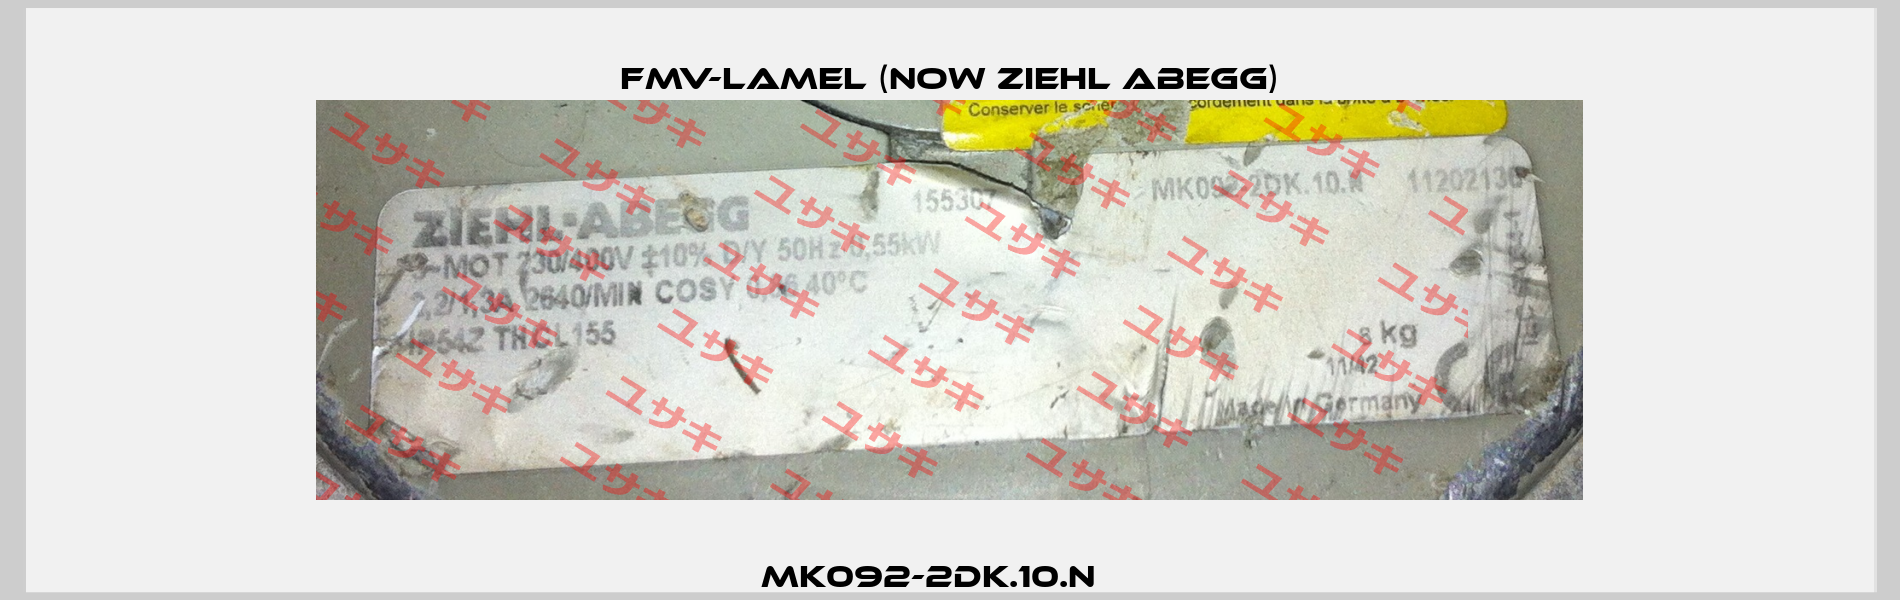 MK092-2DK.10.N     FMV-Lamel (now Ziehl Abegg)